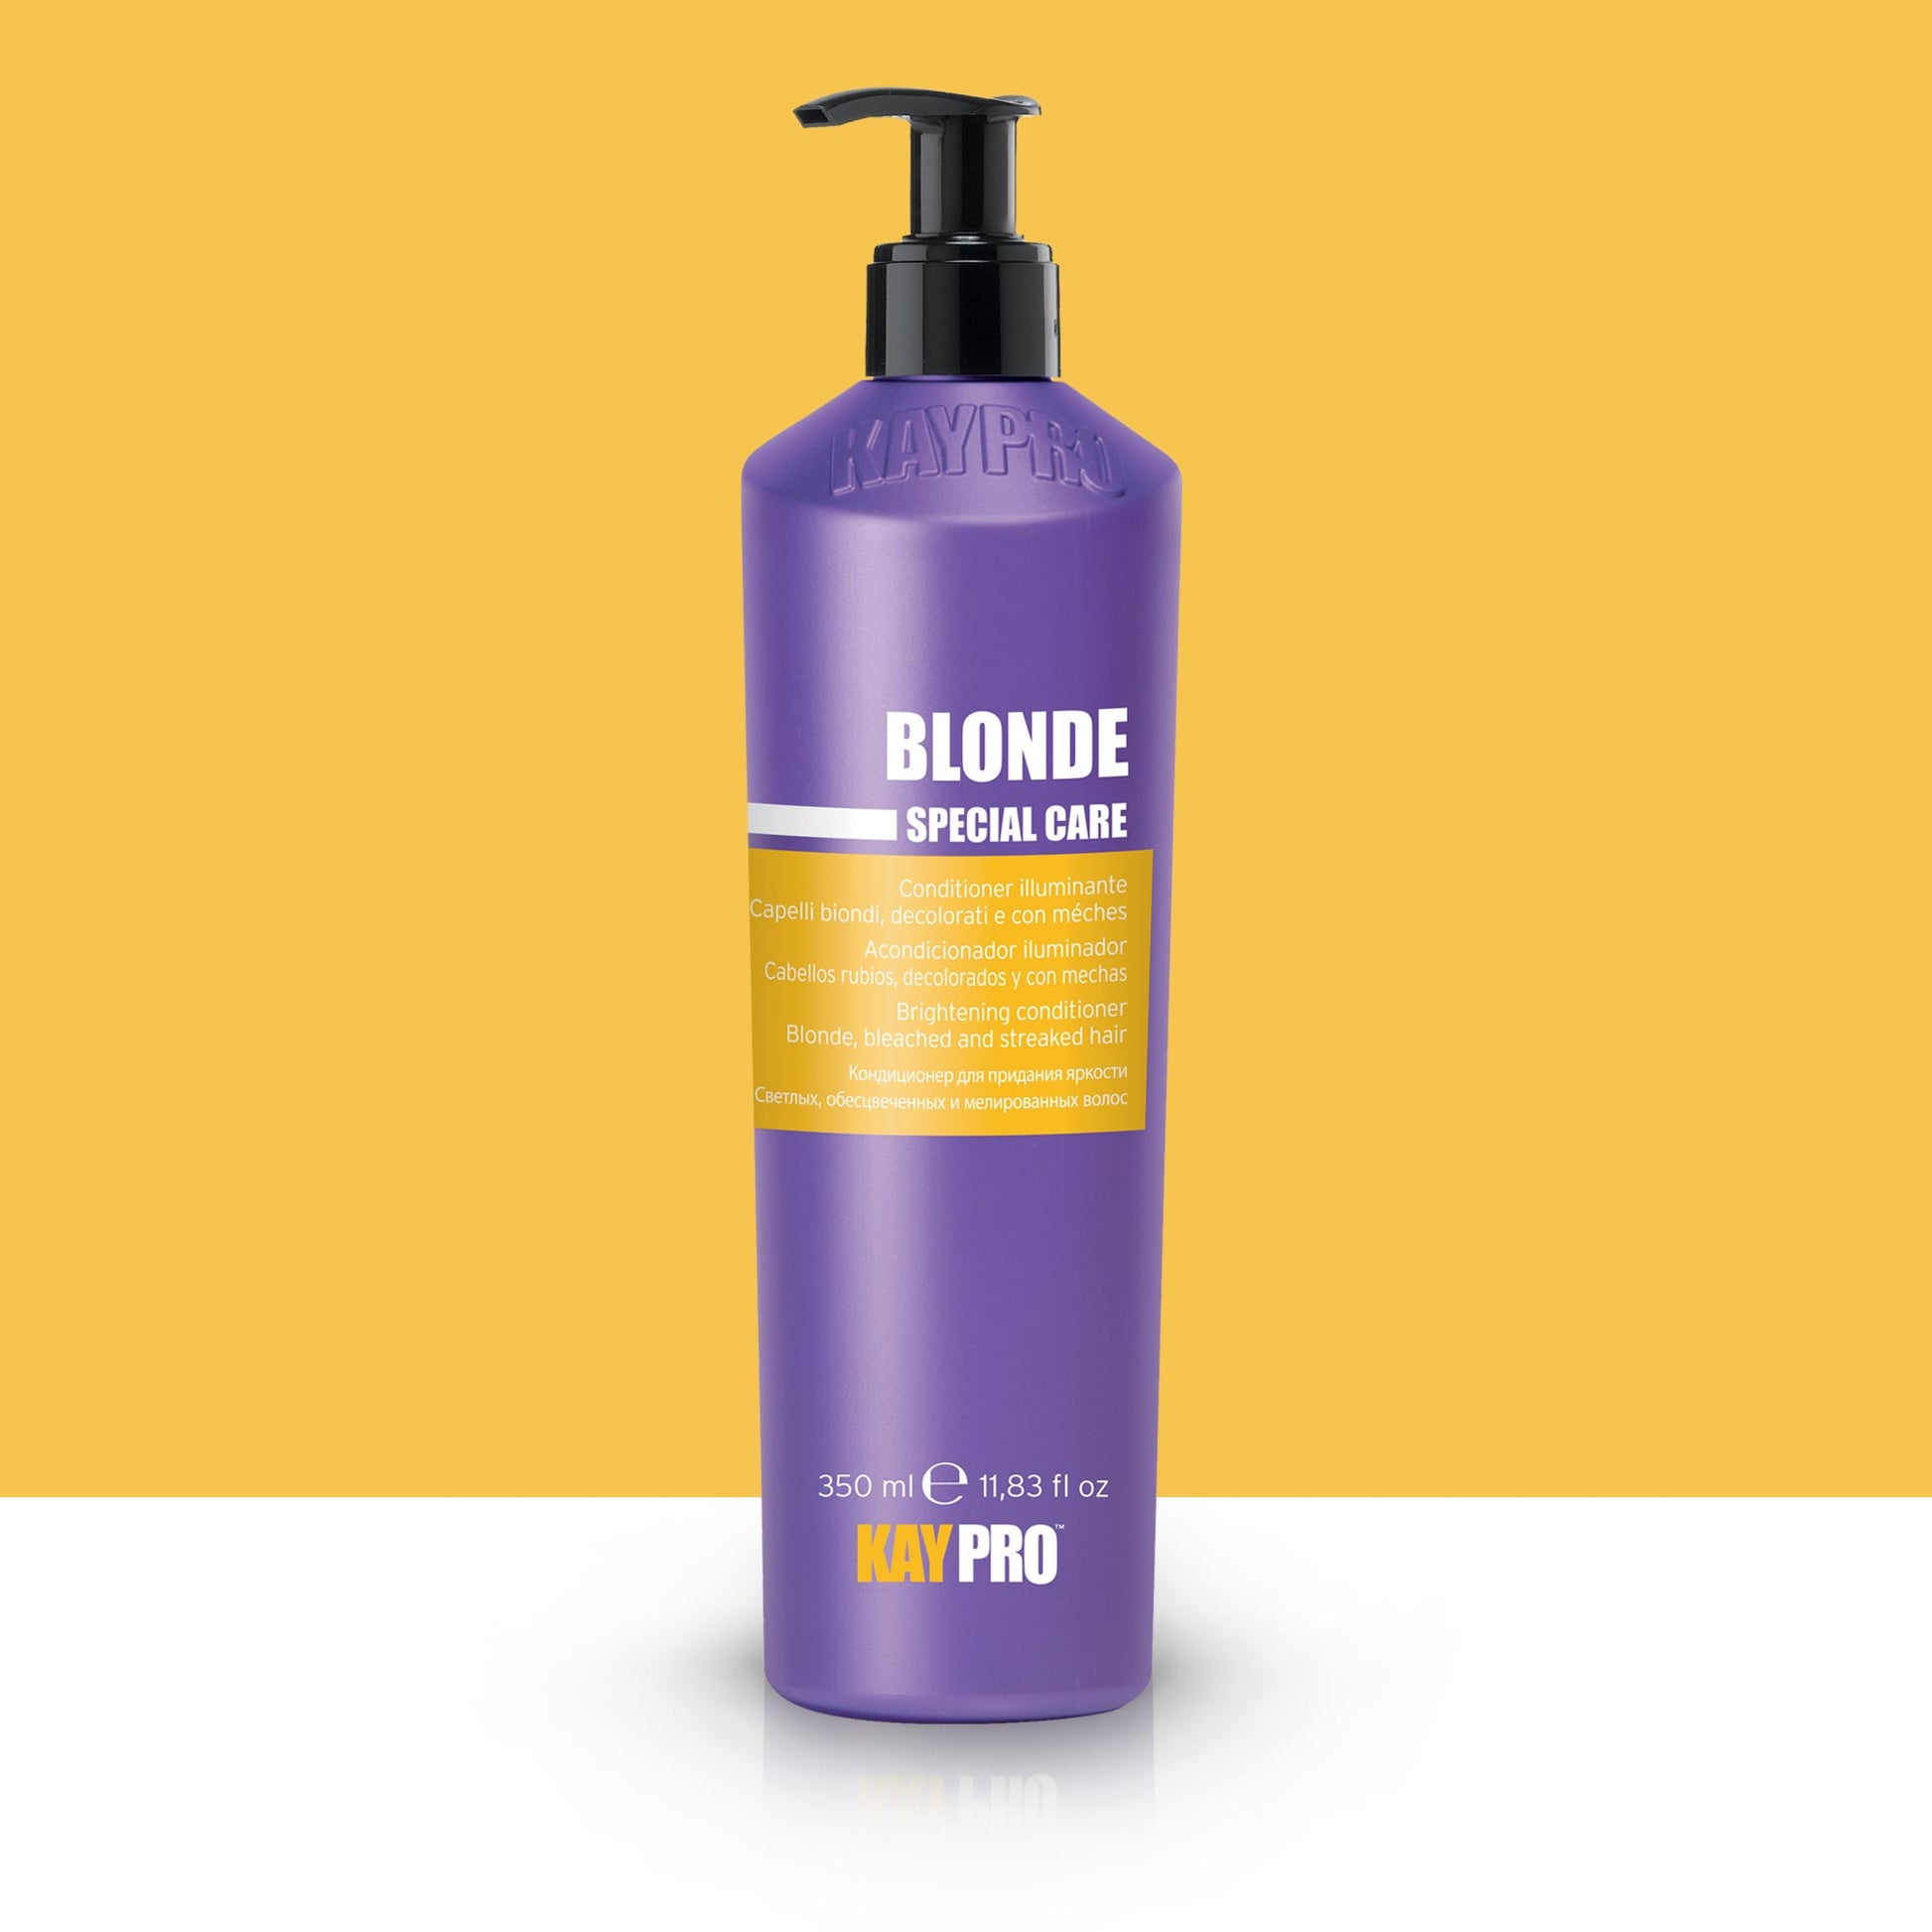 KAYPRO Blonde - Acondicionador iluminador para cabellos rubios decolorados con mechas 350 ml.